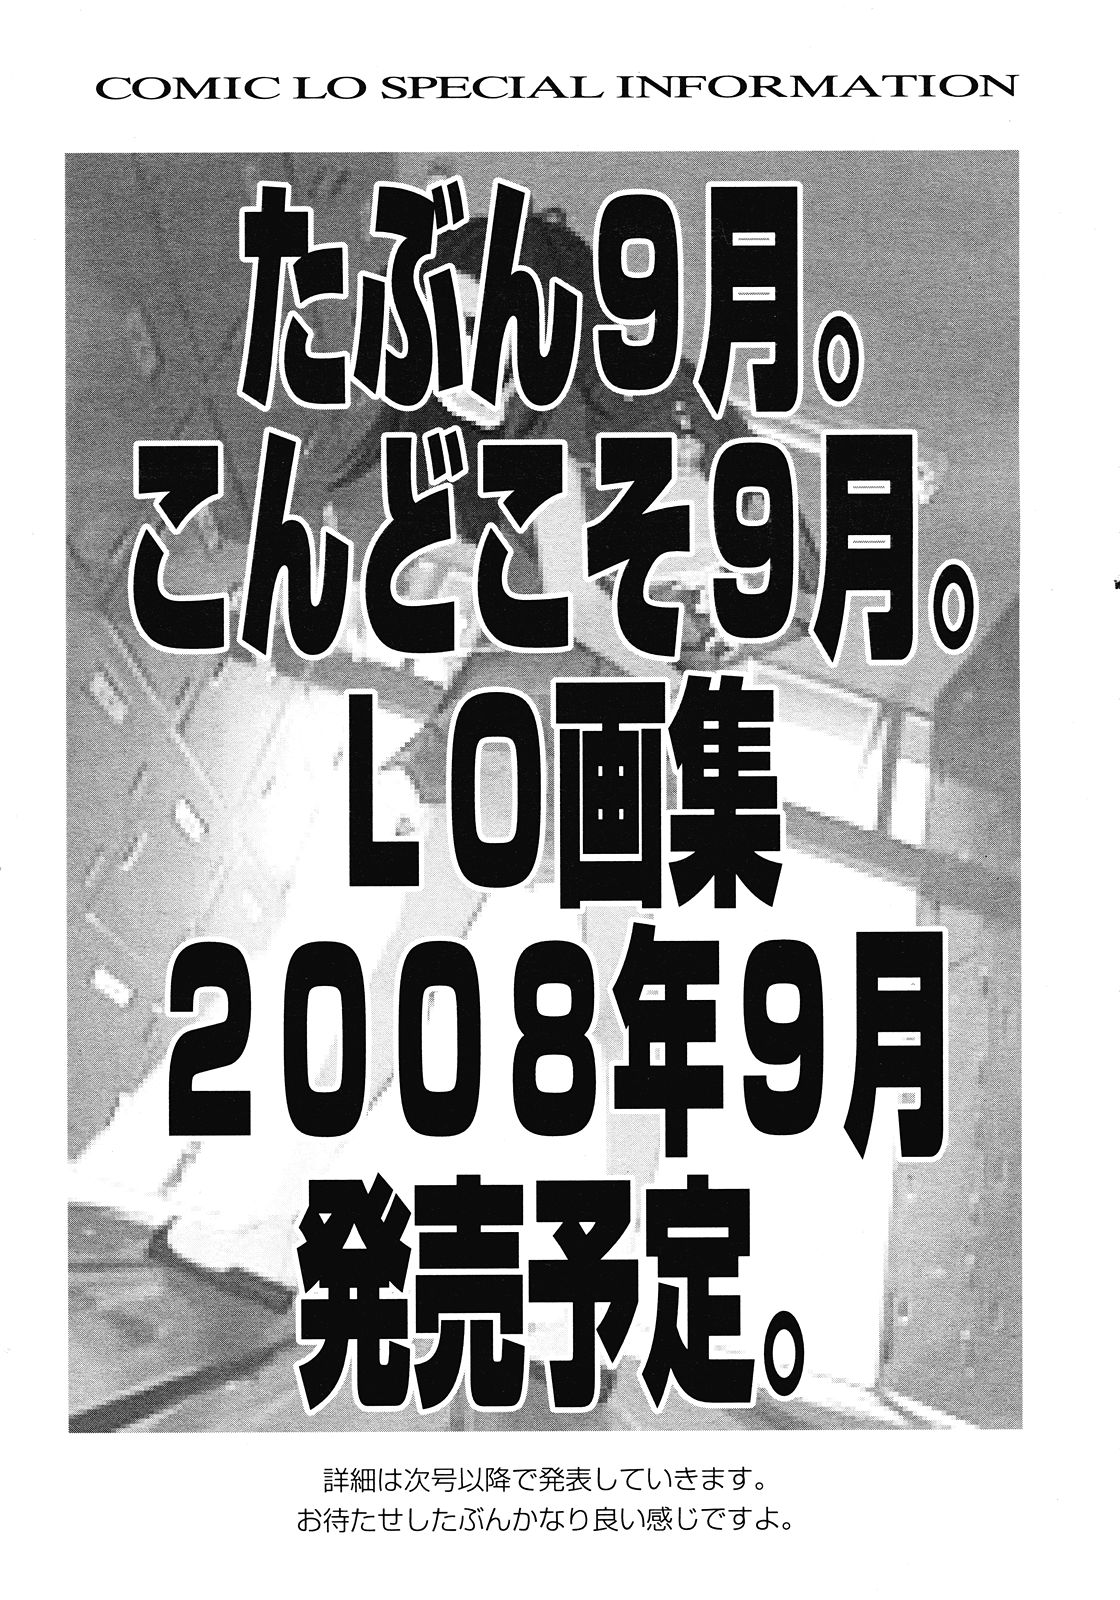 COMIC LO 2008年7月号 Vol.52